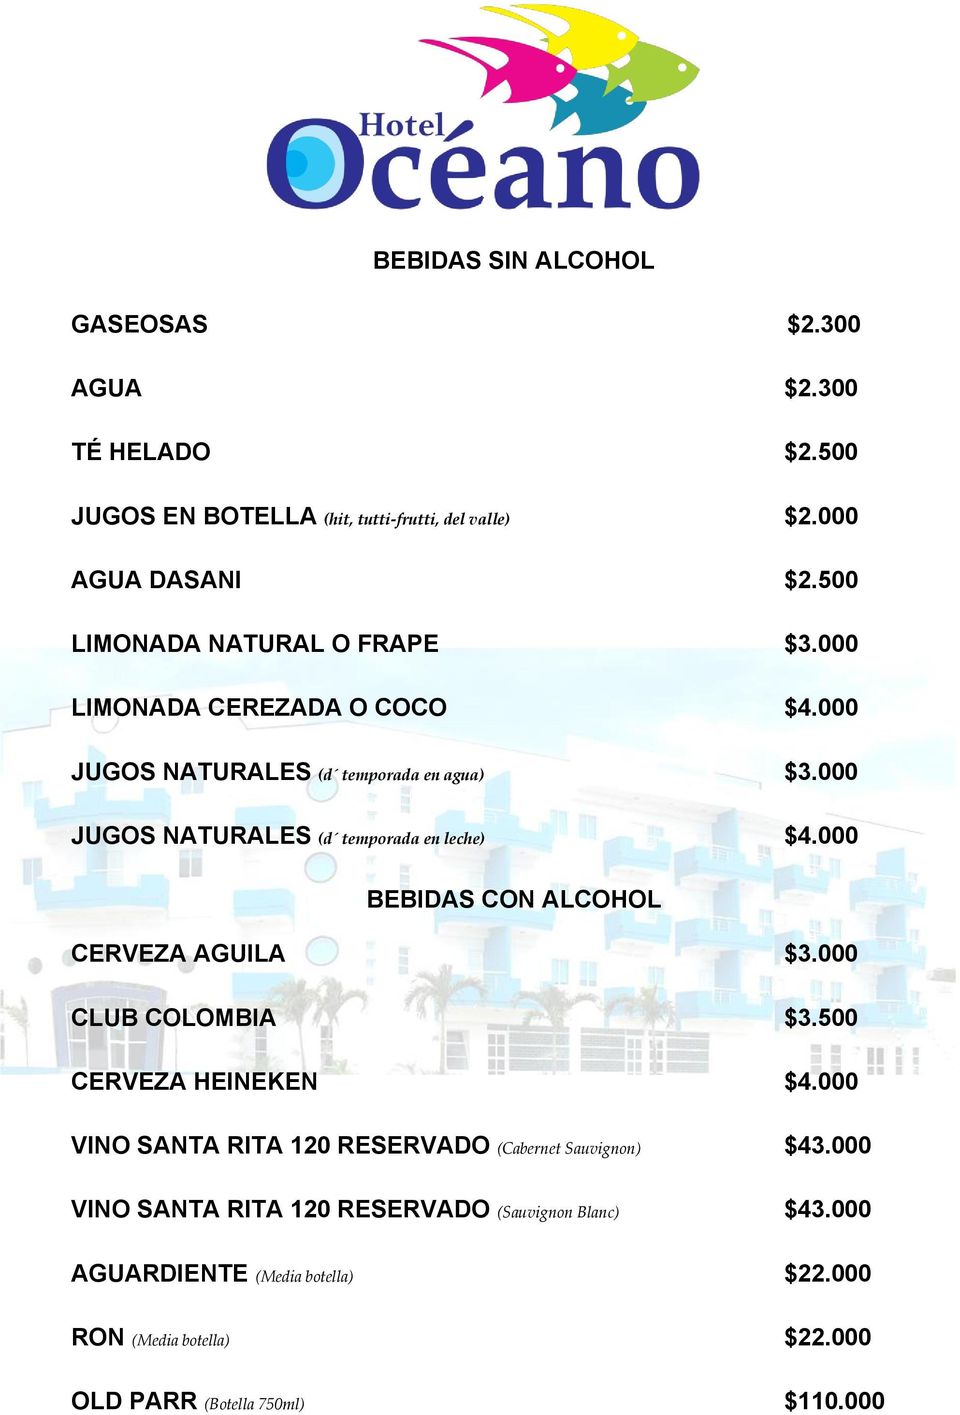 000 JUGOS NATURALES (d temporada en leche) $4.000 BEBIDAS CON ALCOHOL CERVEZA AGUILA $3.000 CLUB COLOMBIA $3.500 CERVEZA HEINEKEN $4.